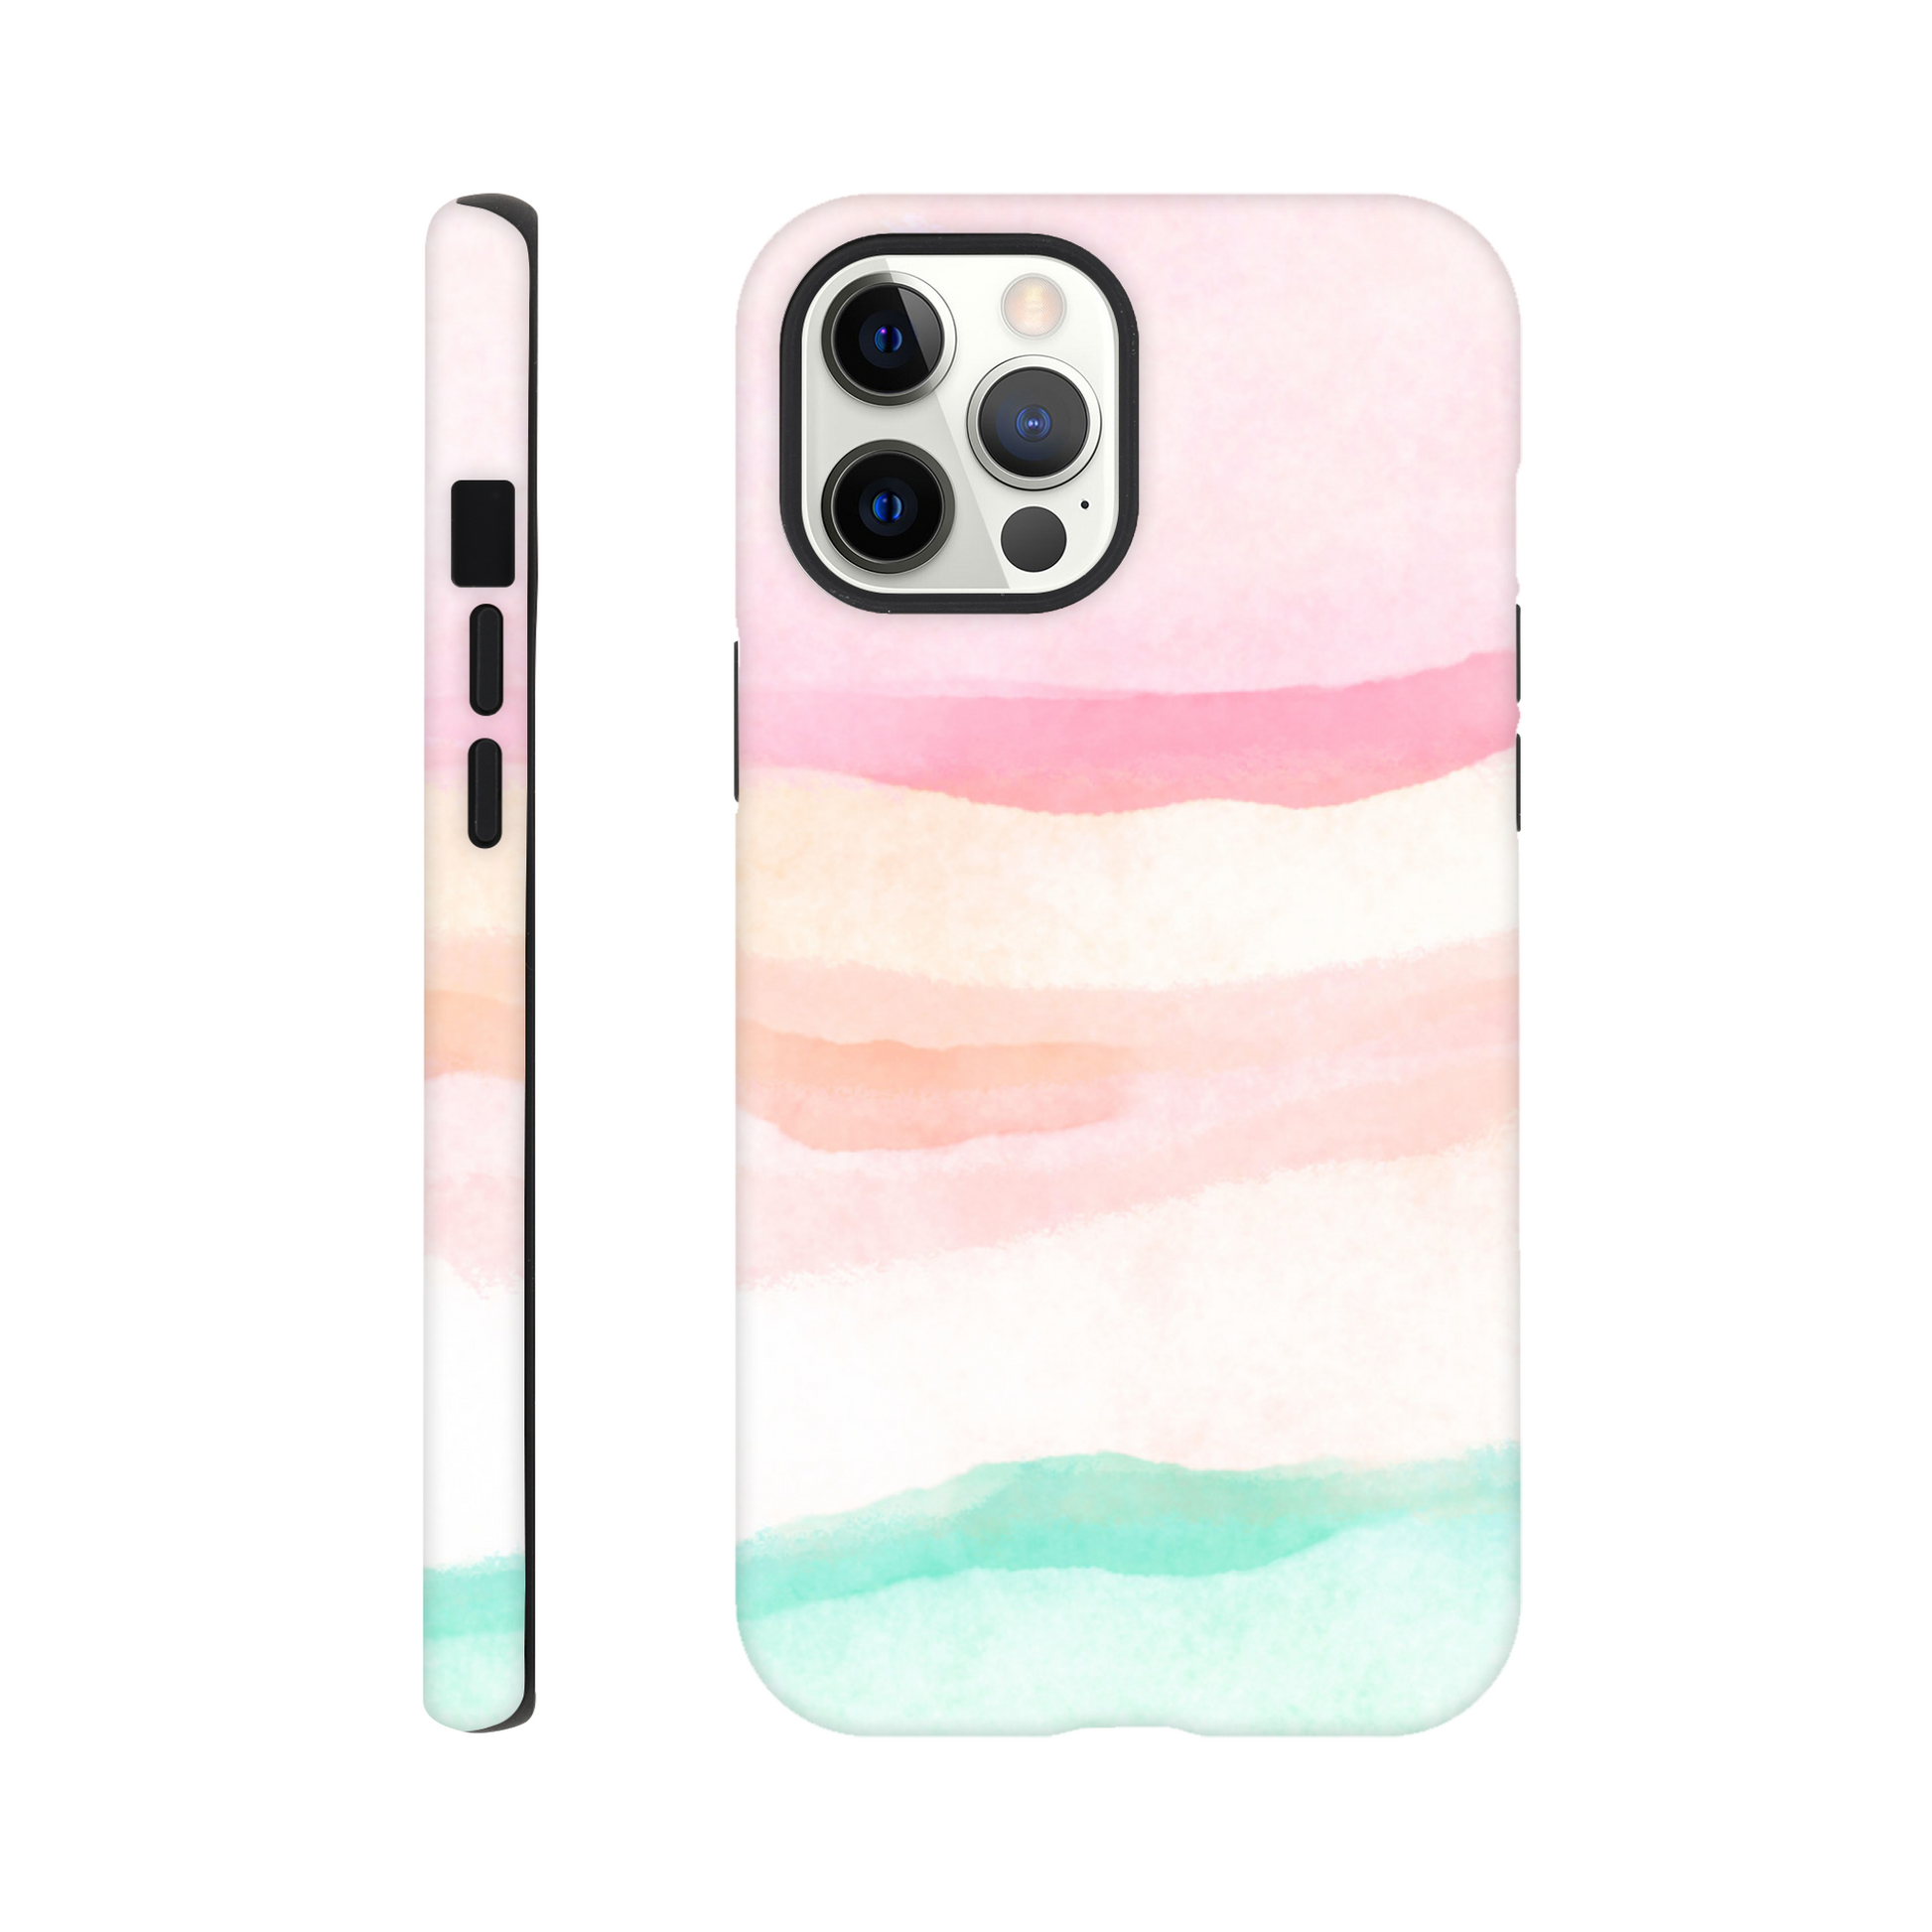 Pastels - Tough case iPhone 12 Pro Max Phone Case